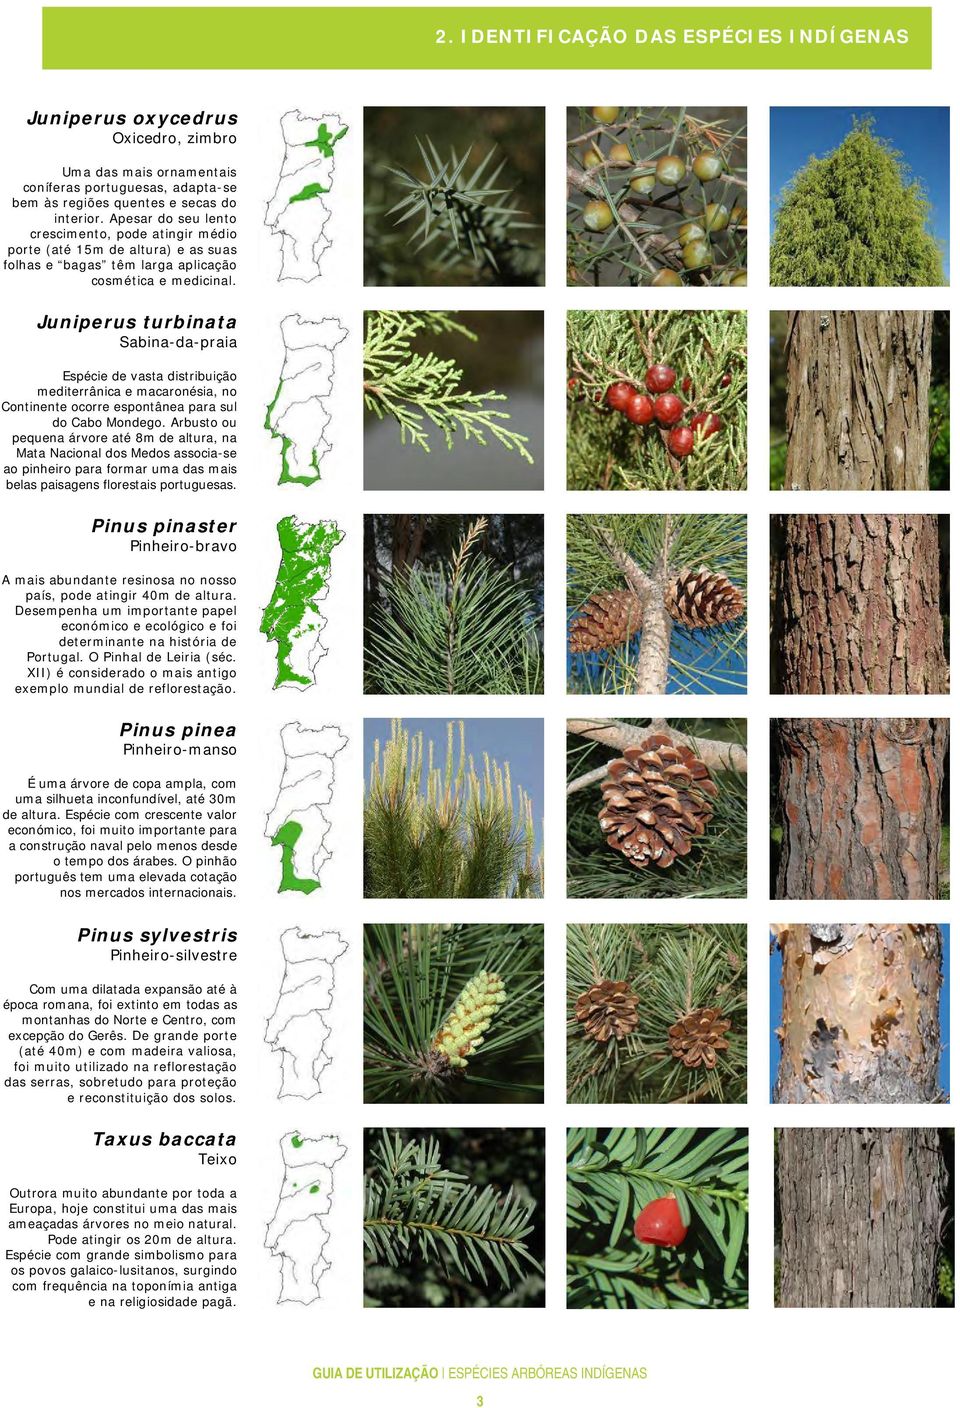 Juniperus turbinata Sabina-da-praia Espécie de vasta distribuição mediterrânica e macaronésia, no Continente ocorre espontânea para sul do Cabo Mondego.